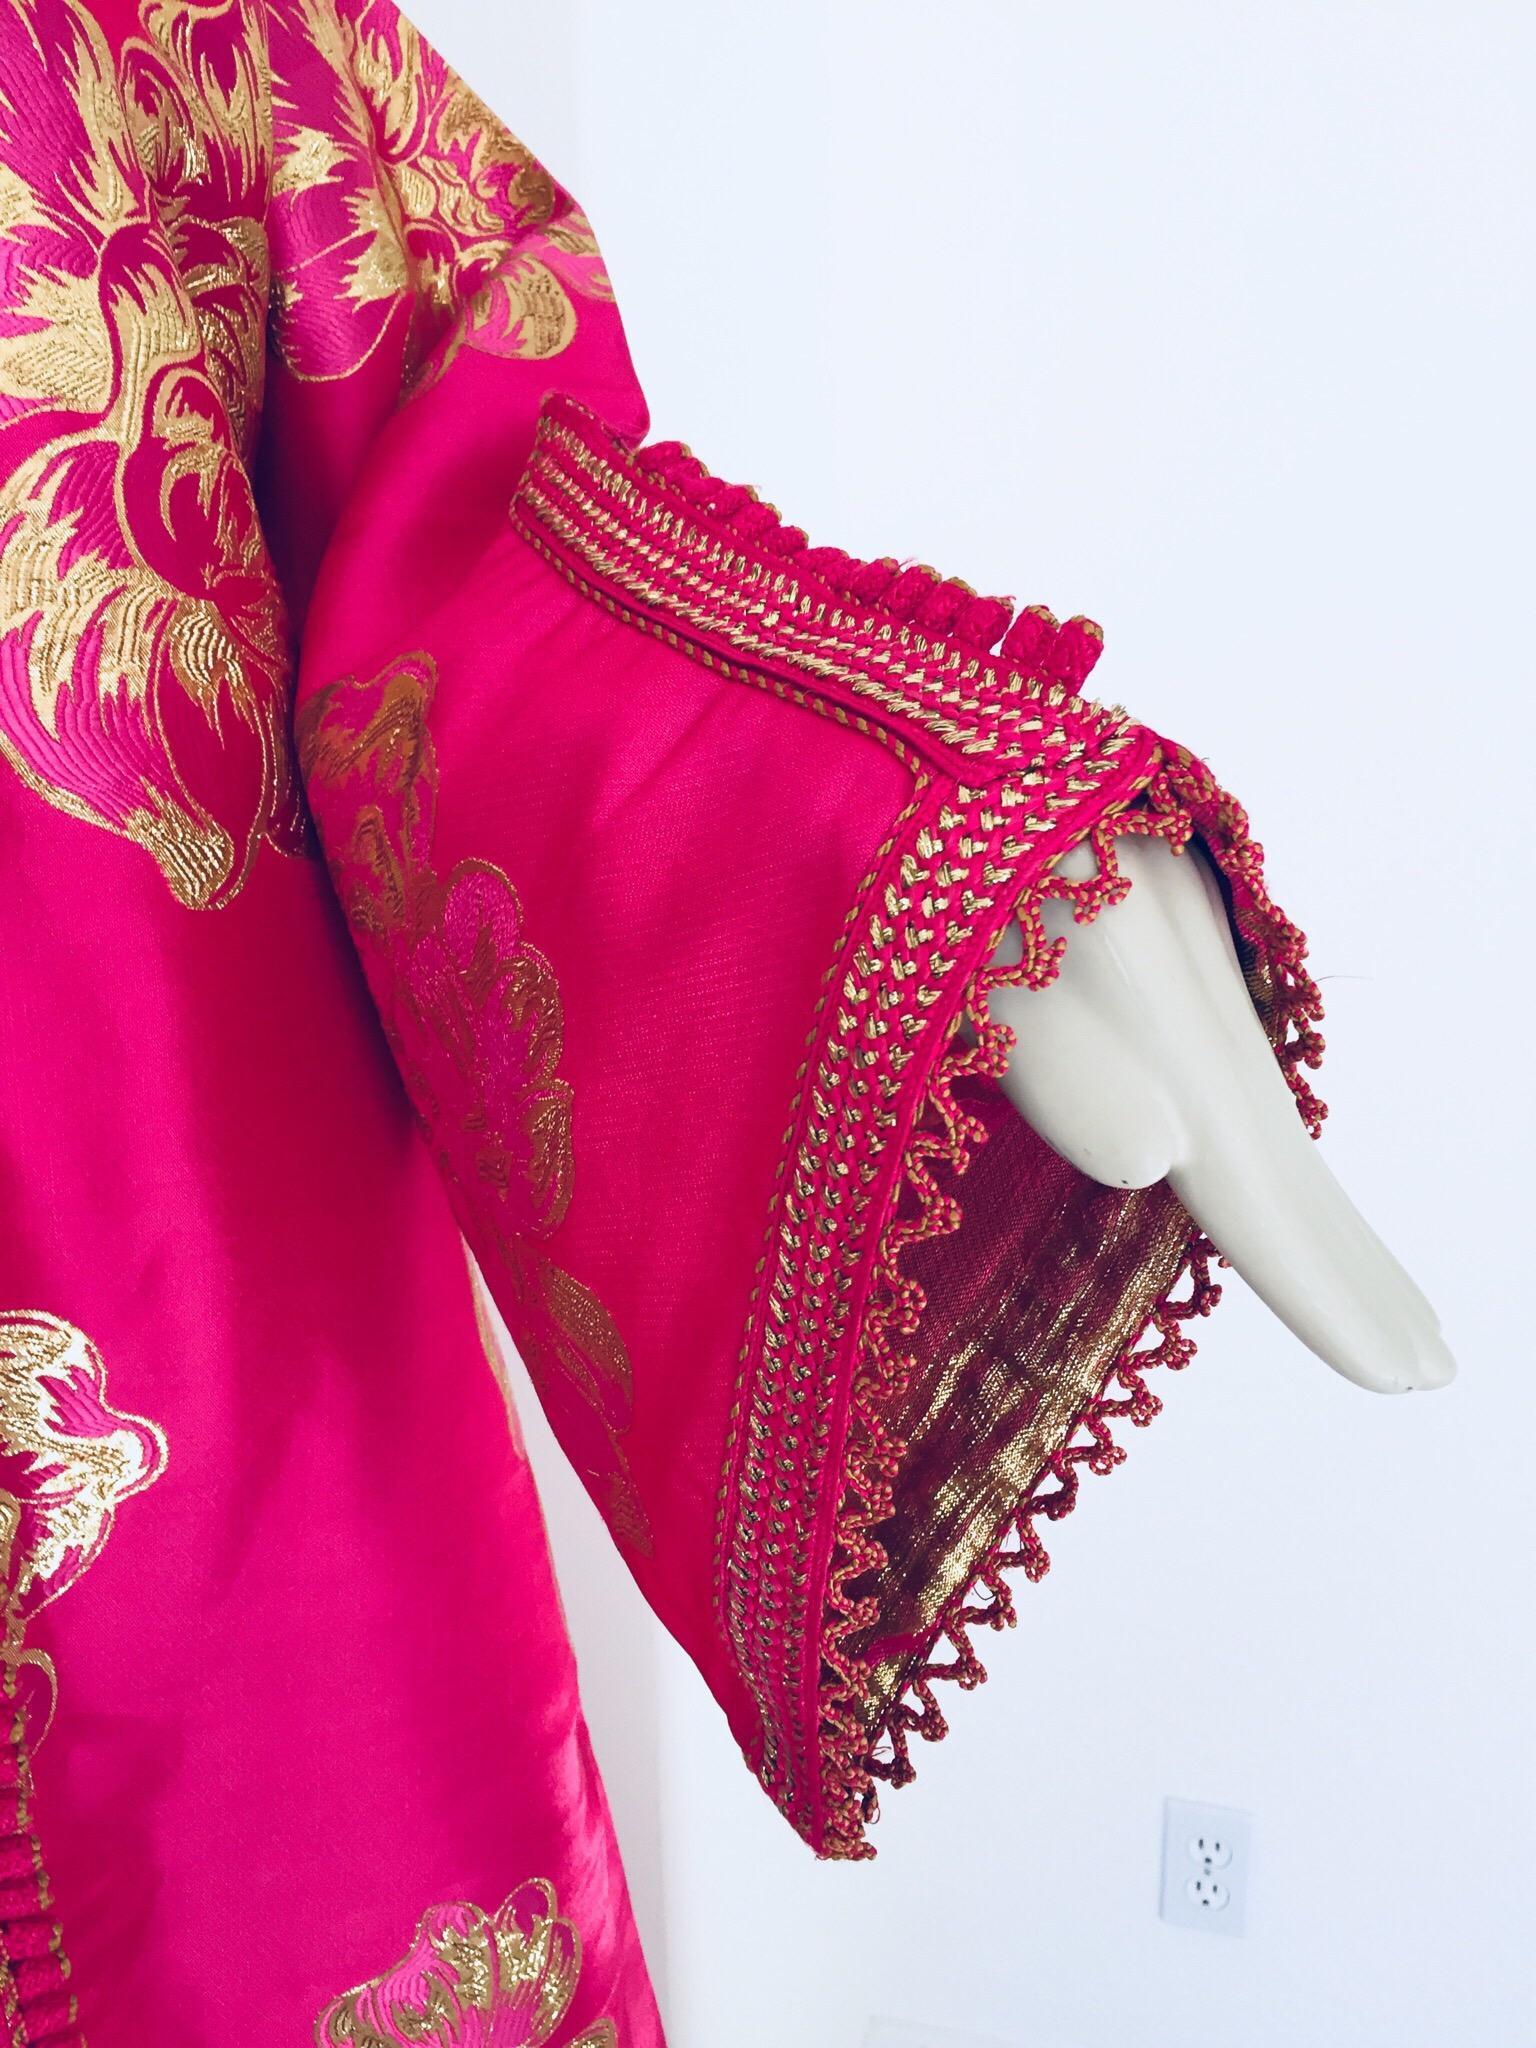 Eleganter marokkanischer Kaftan aus Brokat im Vintage-Stil, bestickt mit Rosa und Gold.
Dieses schicke böhmische Maxikleid aus Brokat ist bestickt und mit handgewebten Fäden verziert. 
Es ist ein Schlupfanzug, der Knopf lässt sich nicht